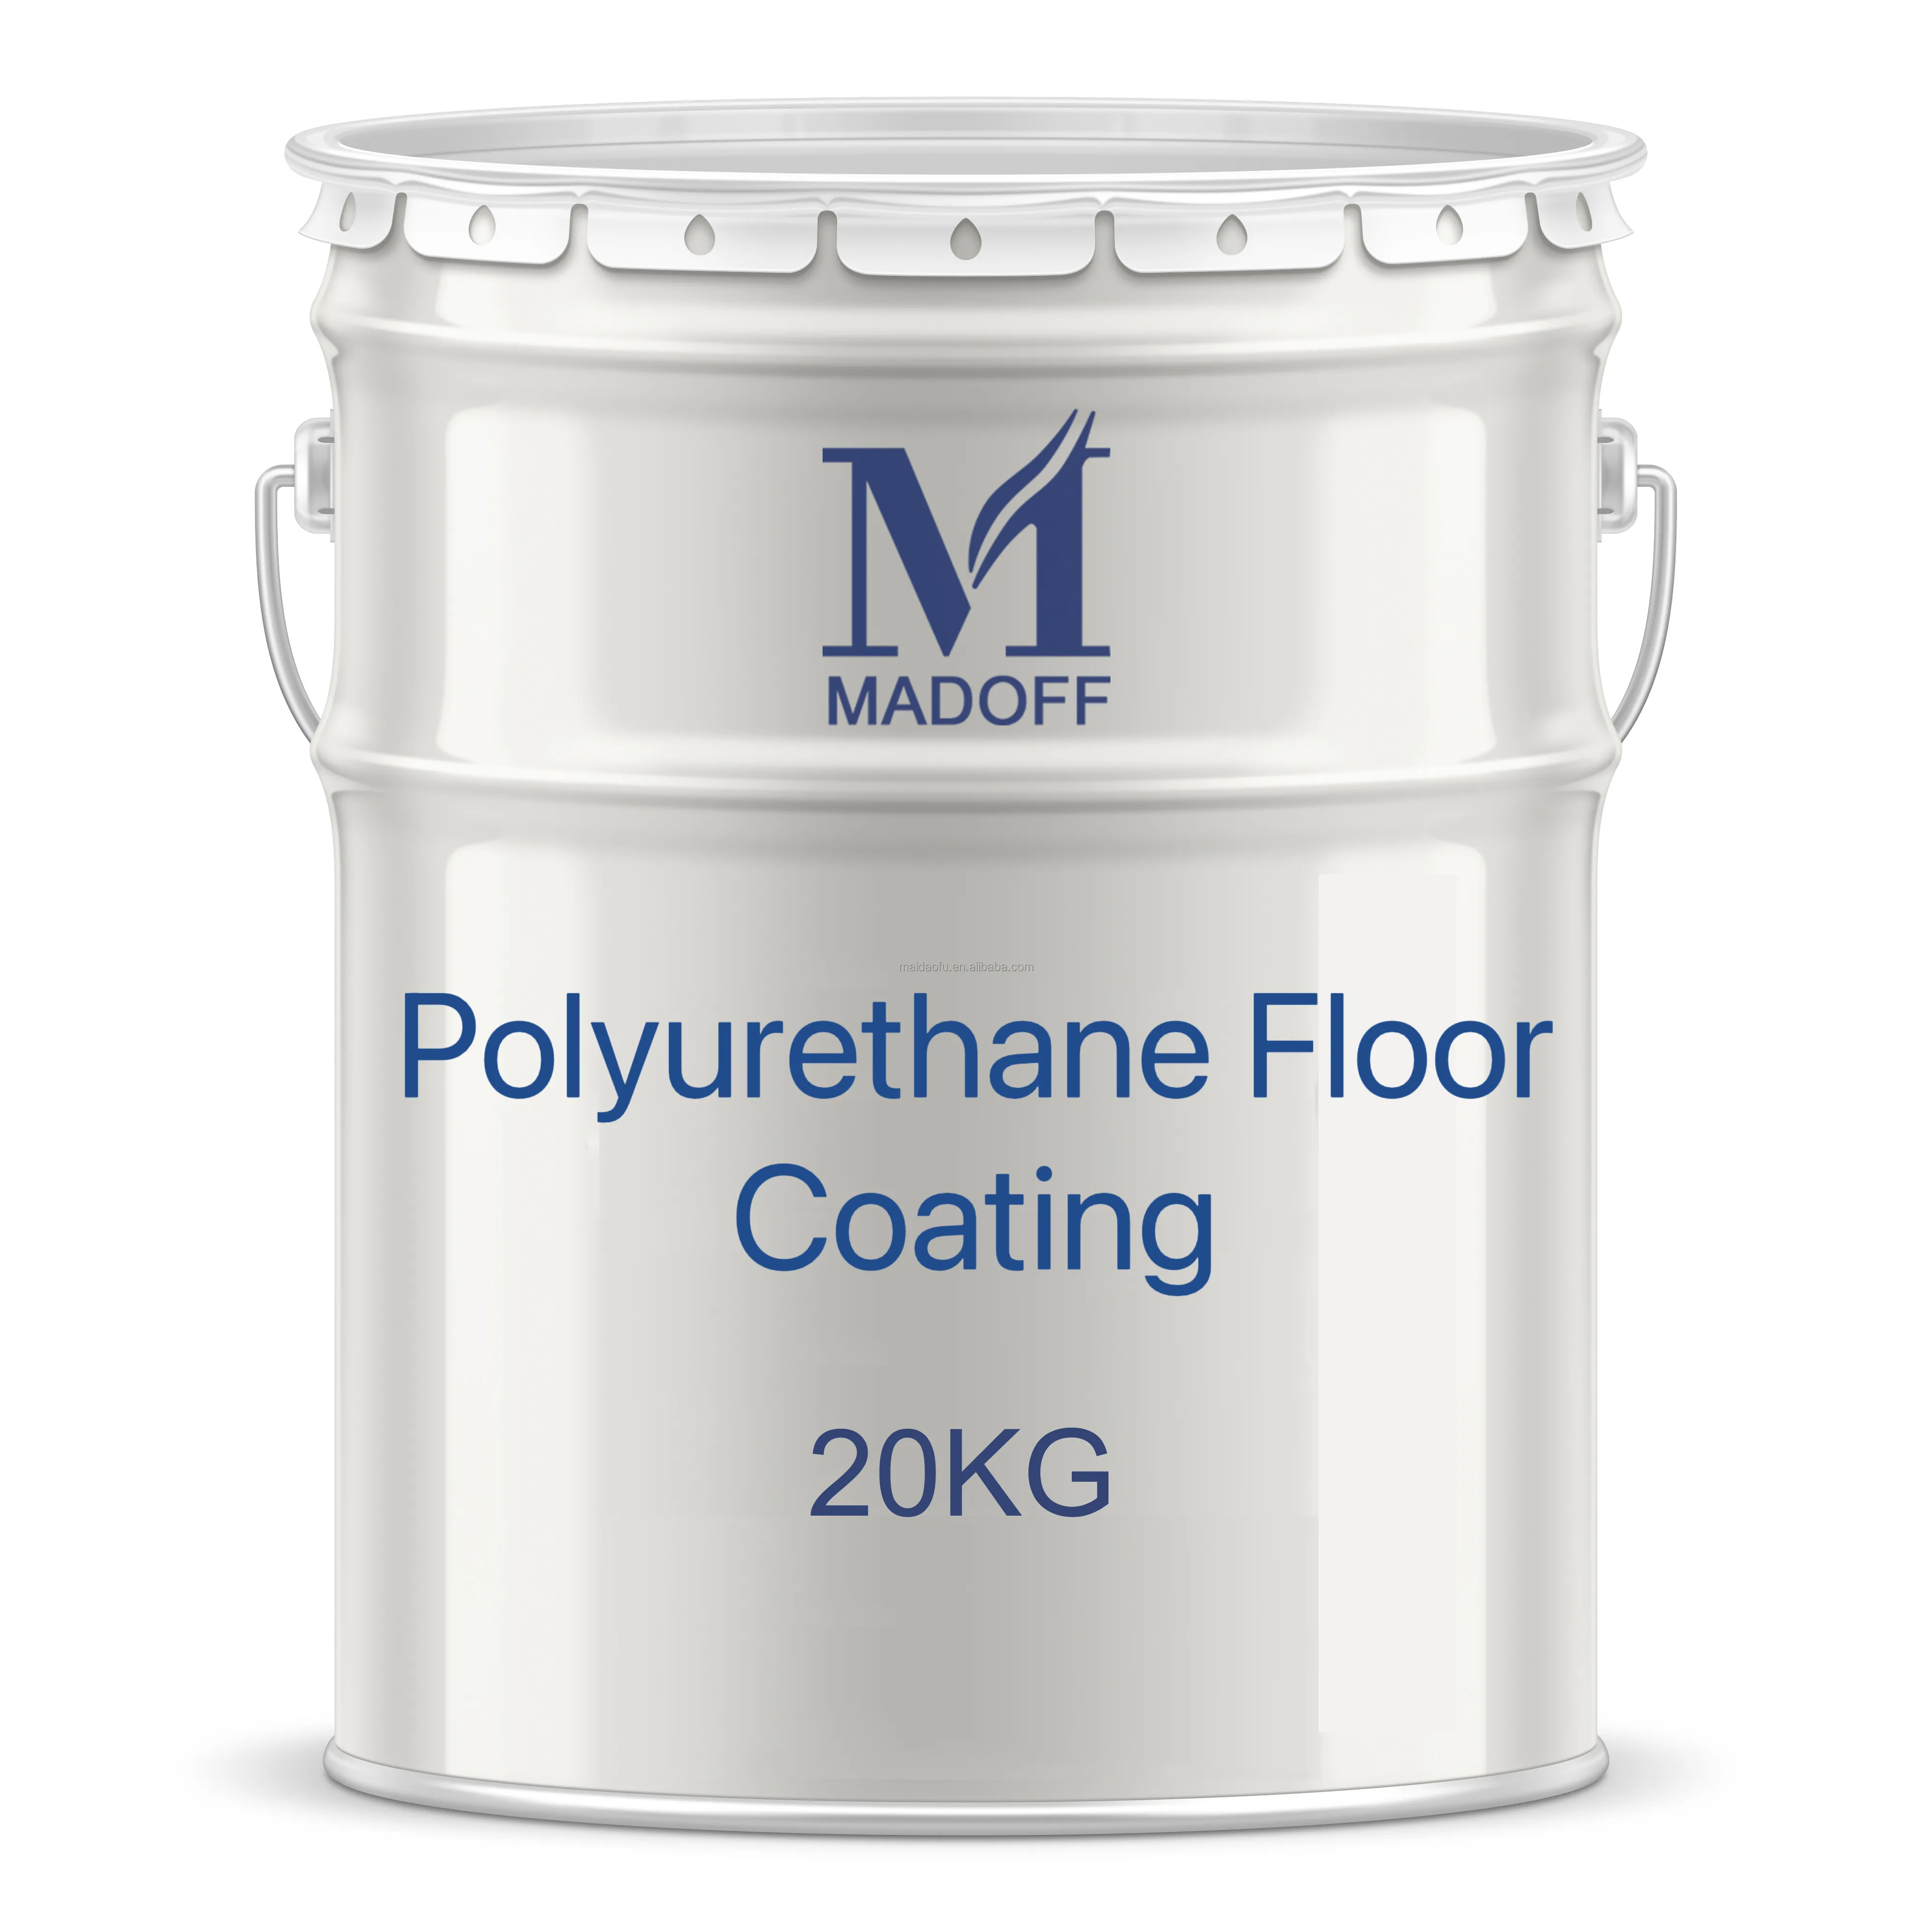 polyurethane coating glue acryl emulsion adhesive concrete adhesive glue for playground flooring rubber